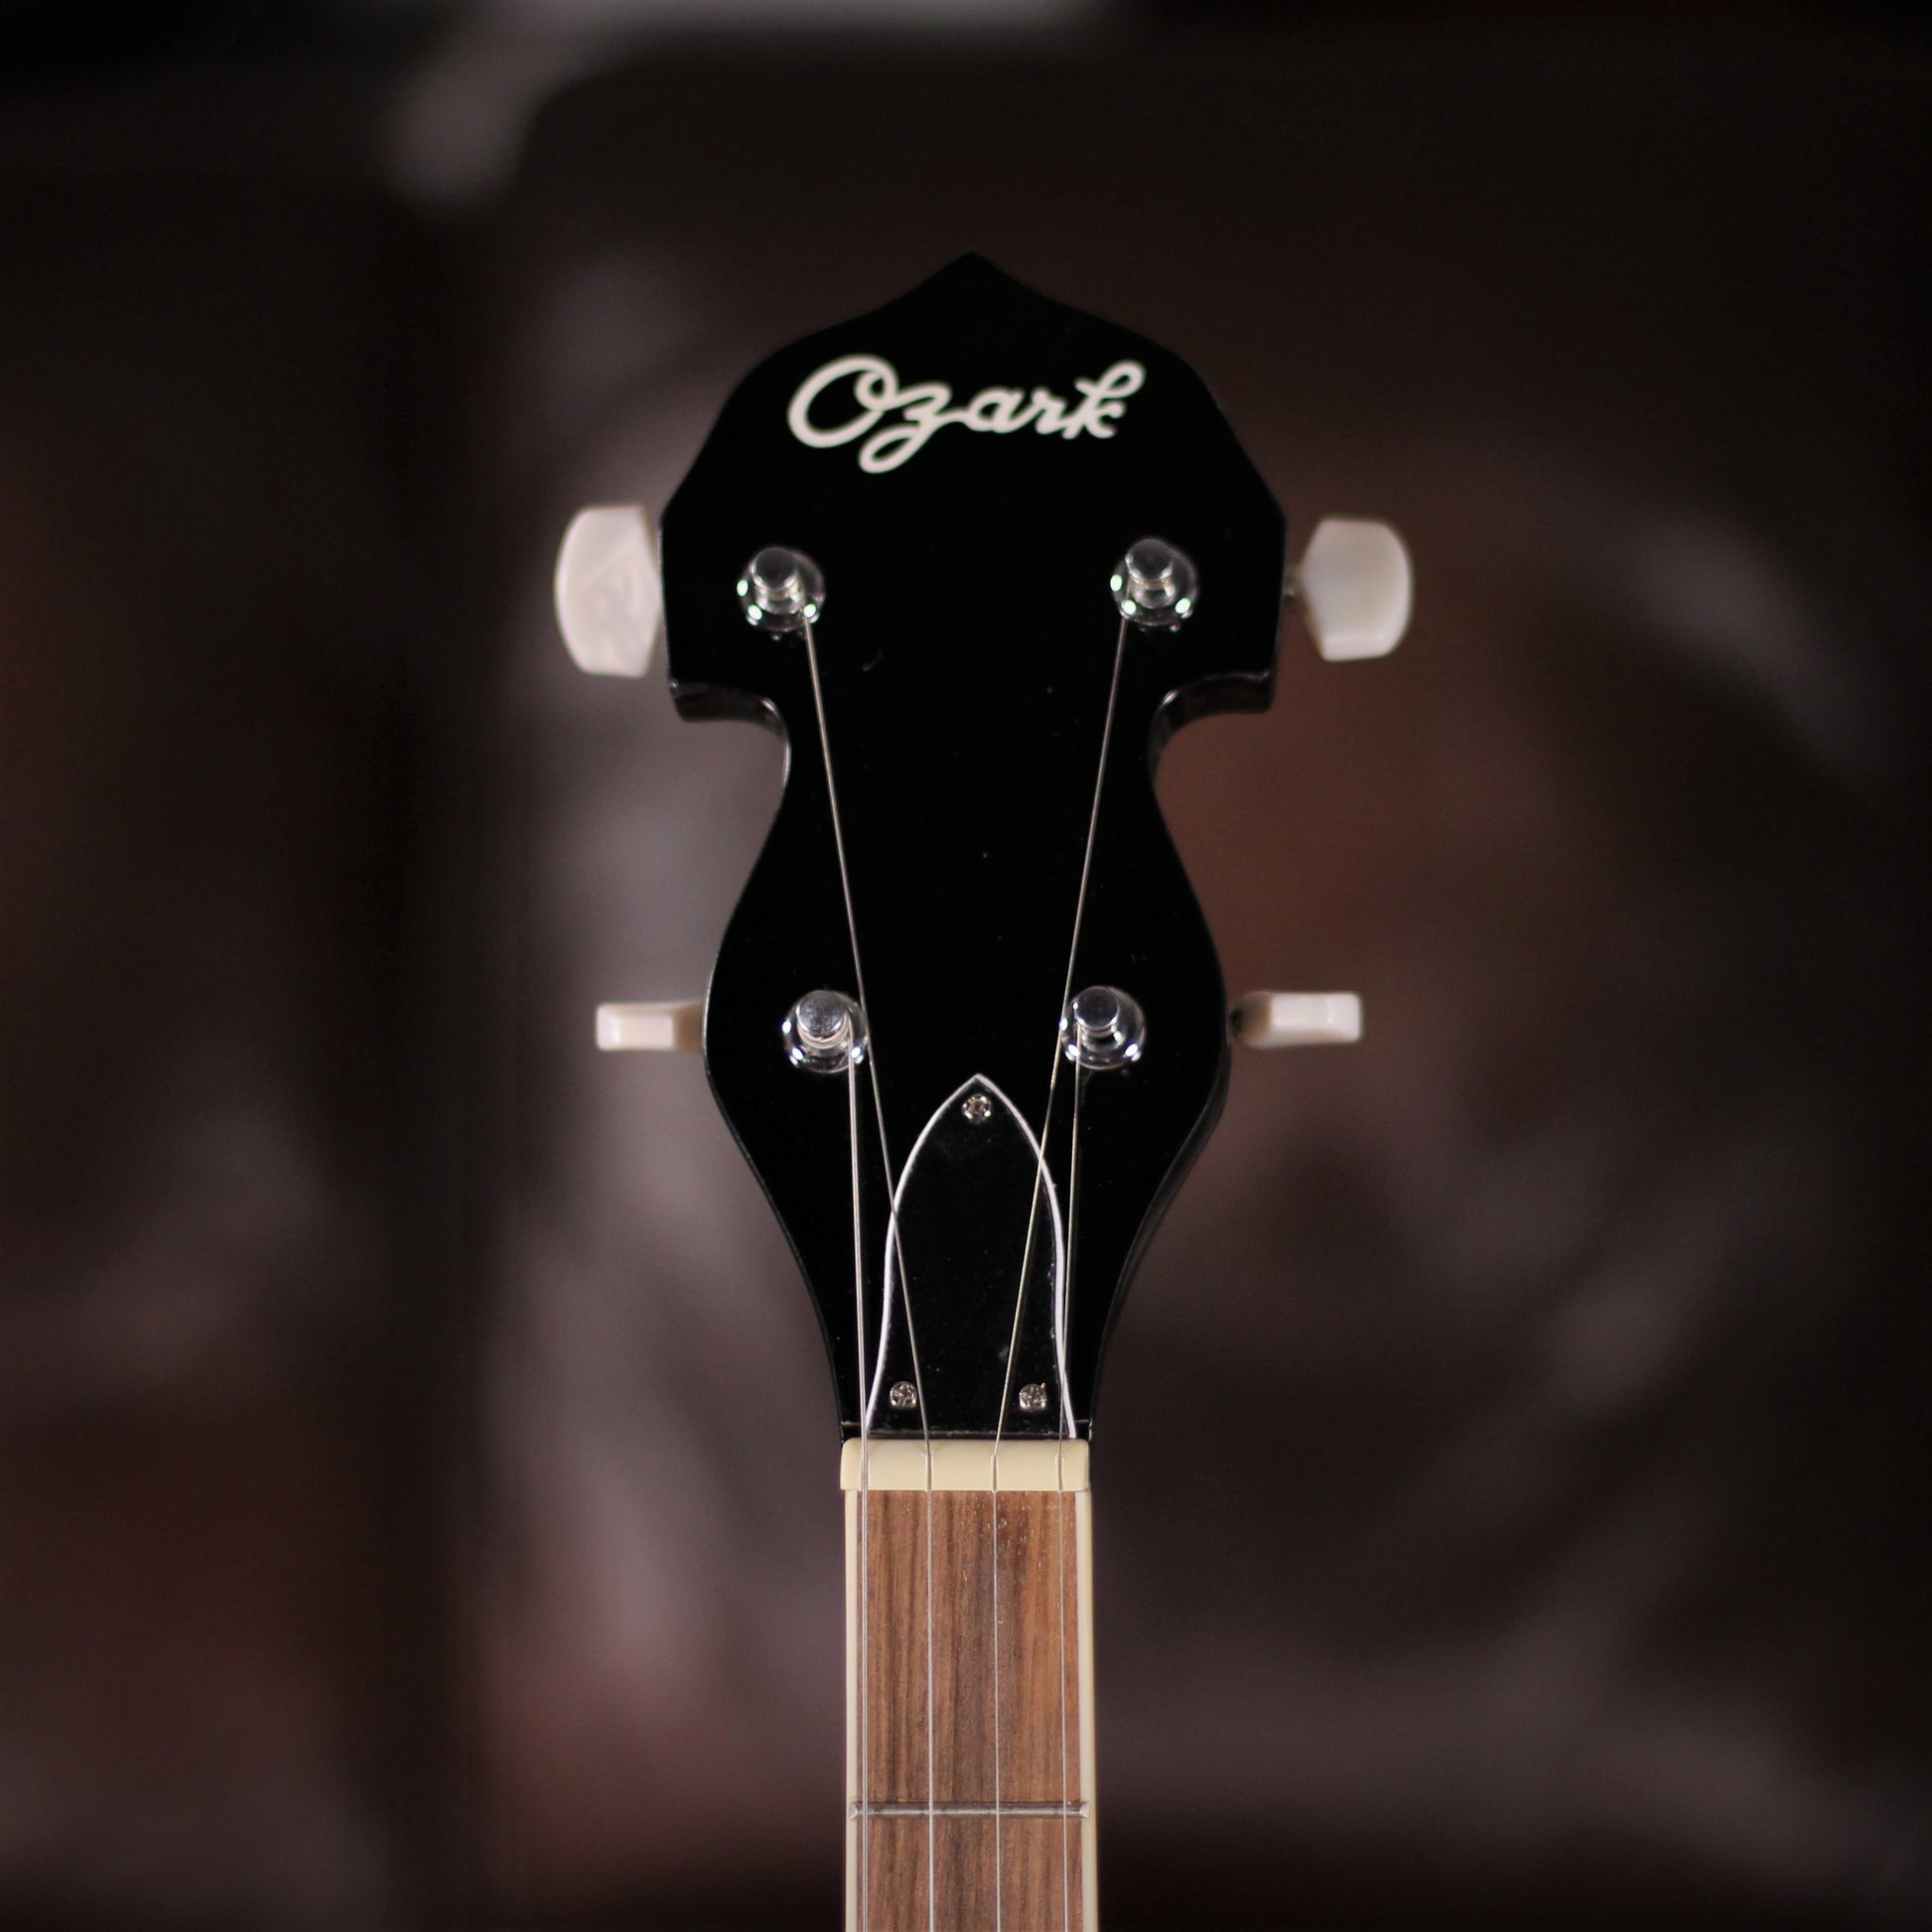 ozark 2104 5 string banjo headstock